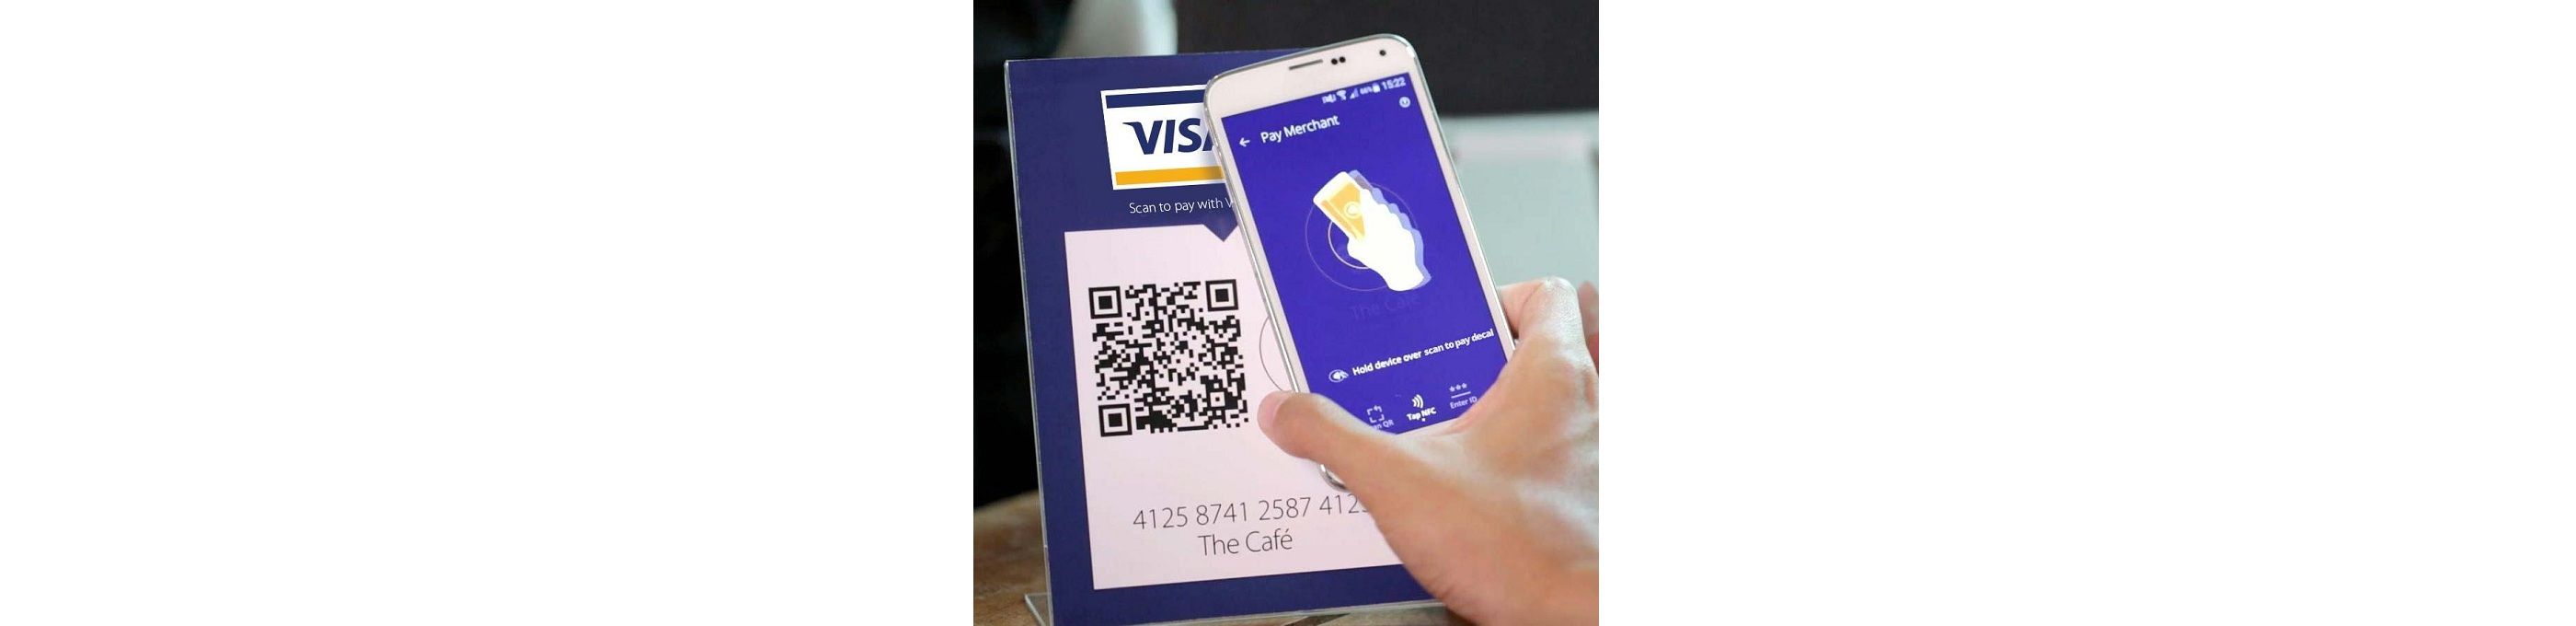 Нововведение от Visa предполагает использование модели оплаты через QR-код. Цель проекта удешевление приема карт для среднего и малого бизнеса